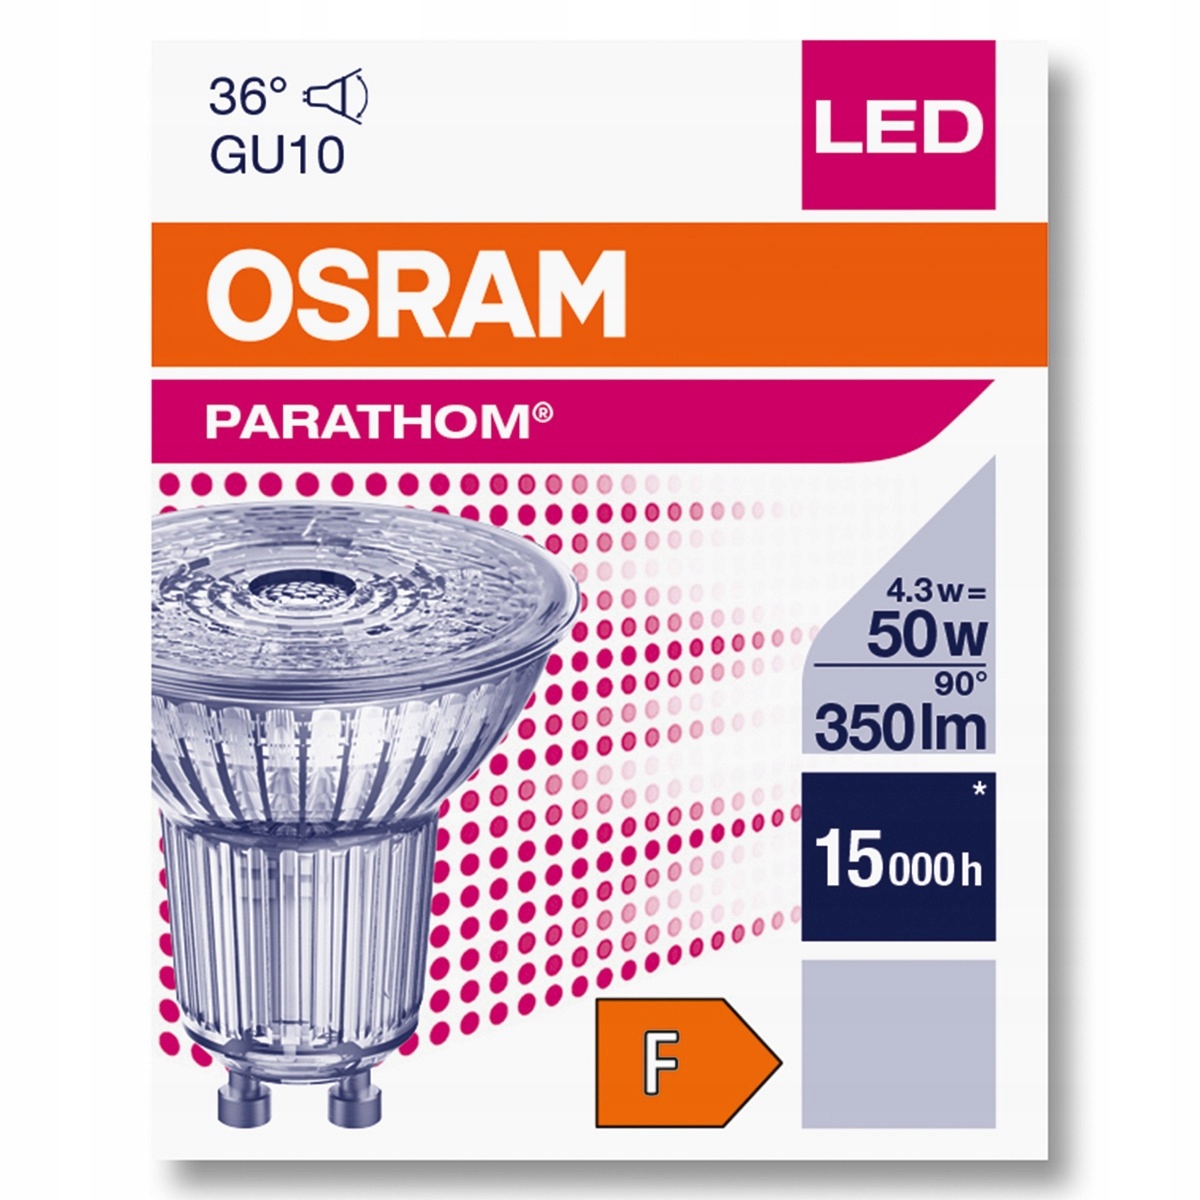 LED GU10 4.3W Parathom 4000K 36 8078 OSRAM